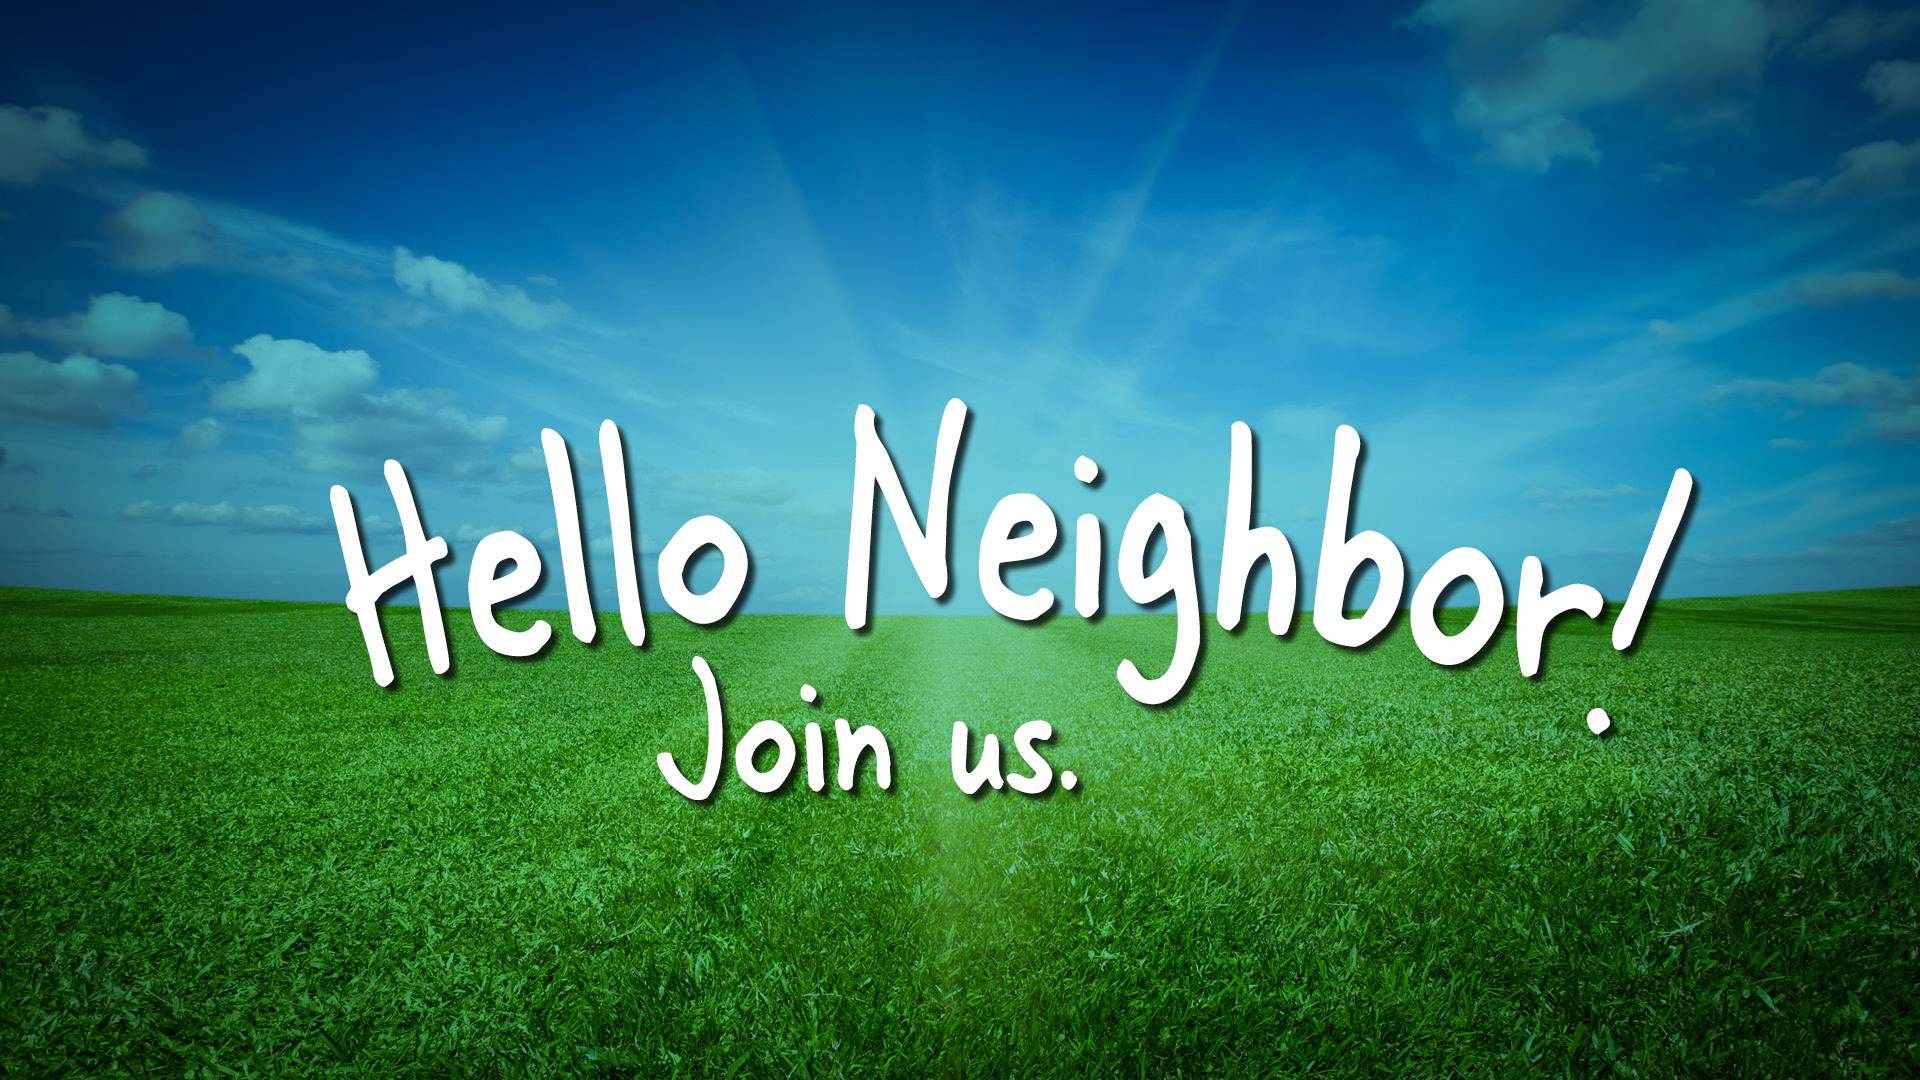 Butterfield Neighborhood Gatherings
Wednesdays | June 1–August 31 | 4:30–7:30 p.m.
Christ Church Butterfield Lawn
